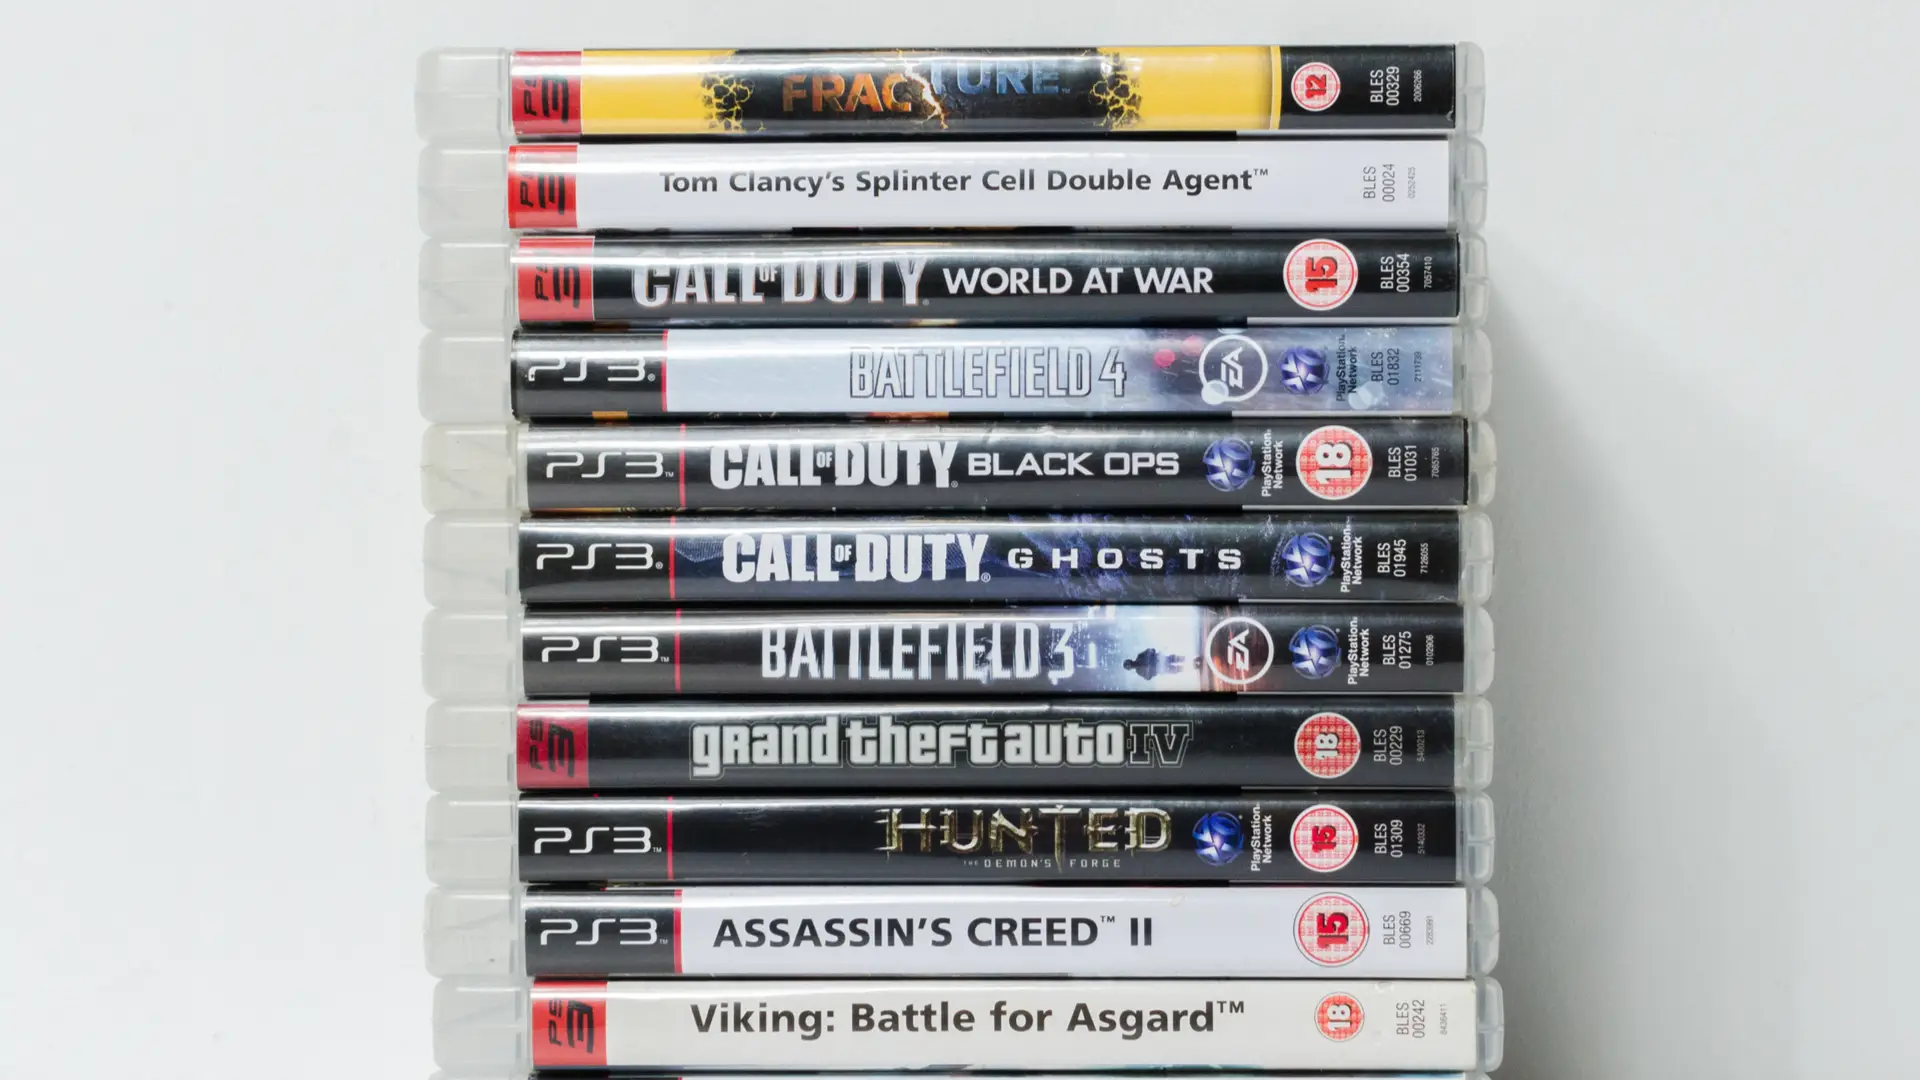 Jogos que podem ser comprados juntos com o PS3 usado